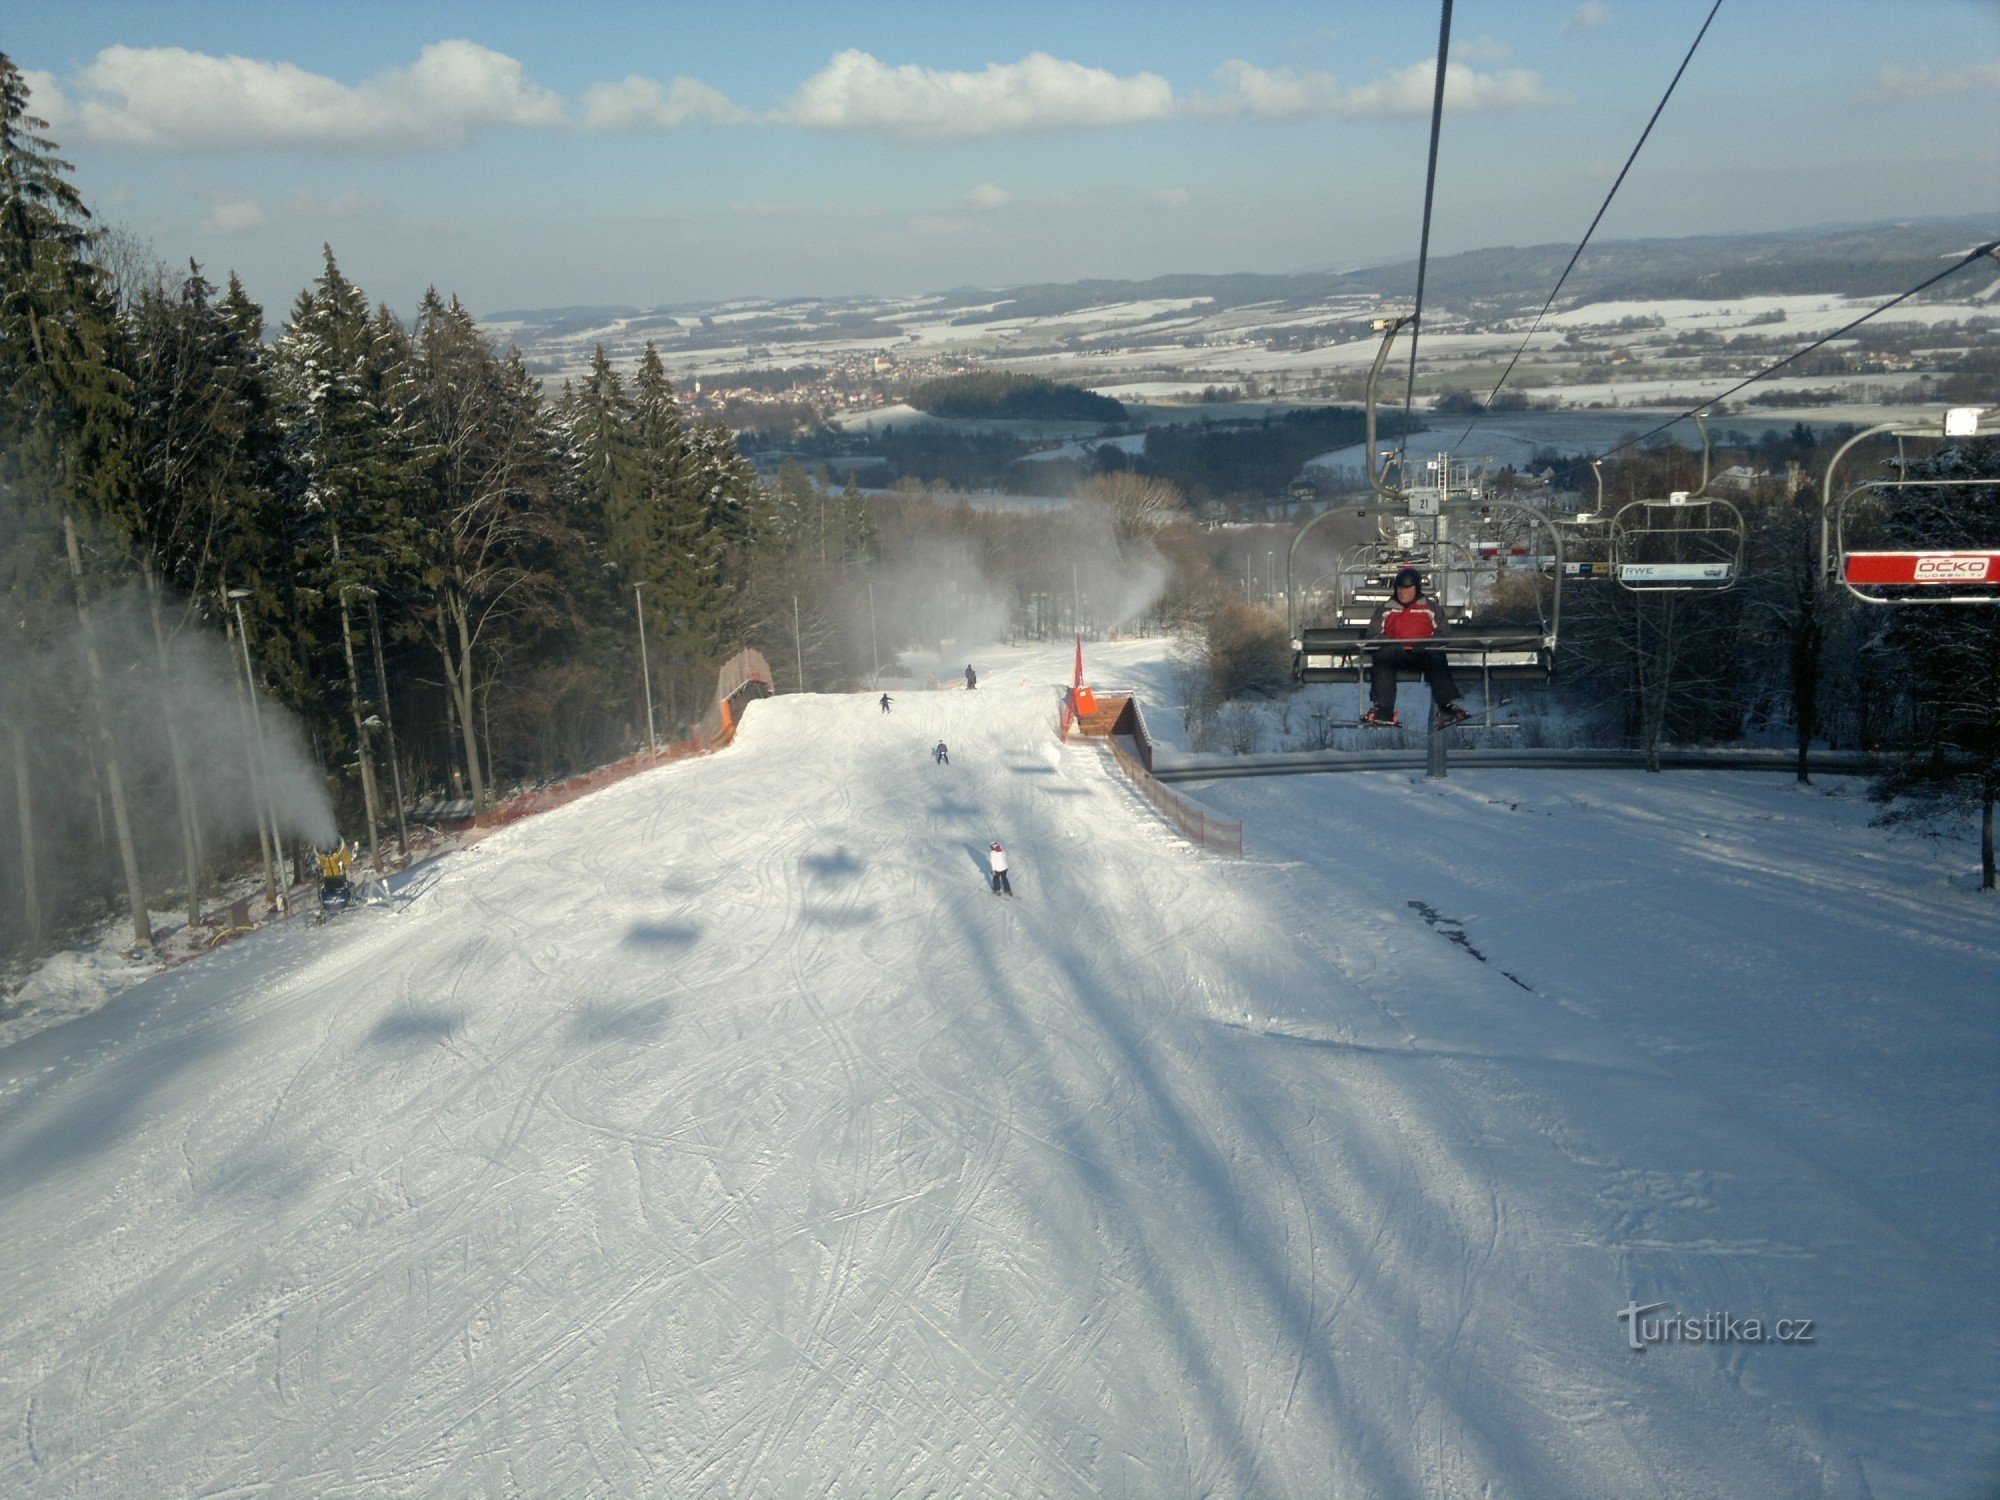 Station de ski Monínec - quoi de neuf ?